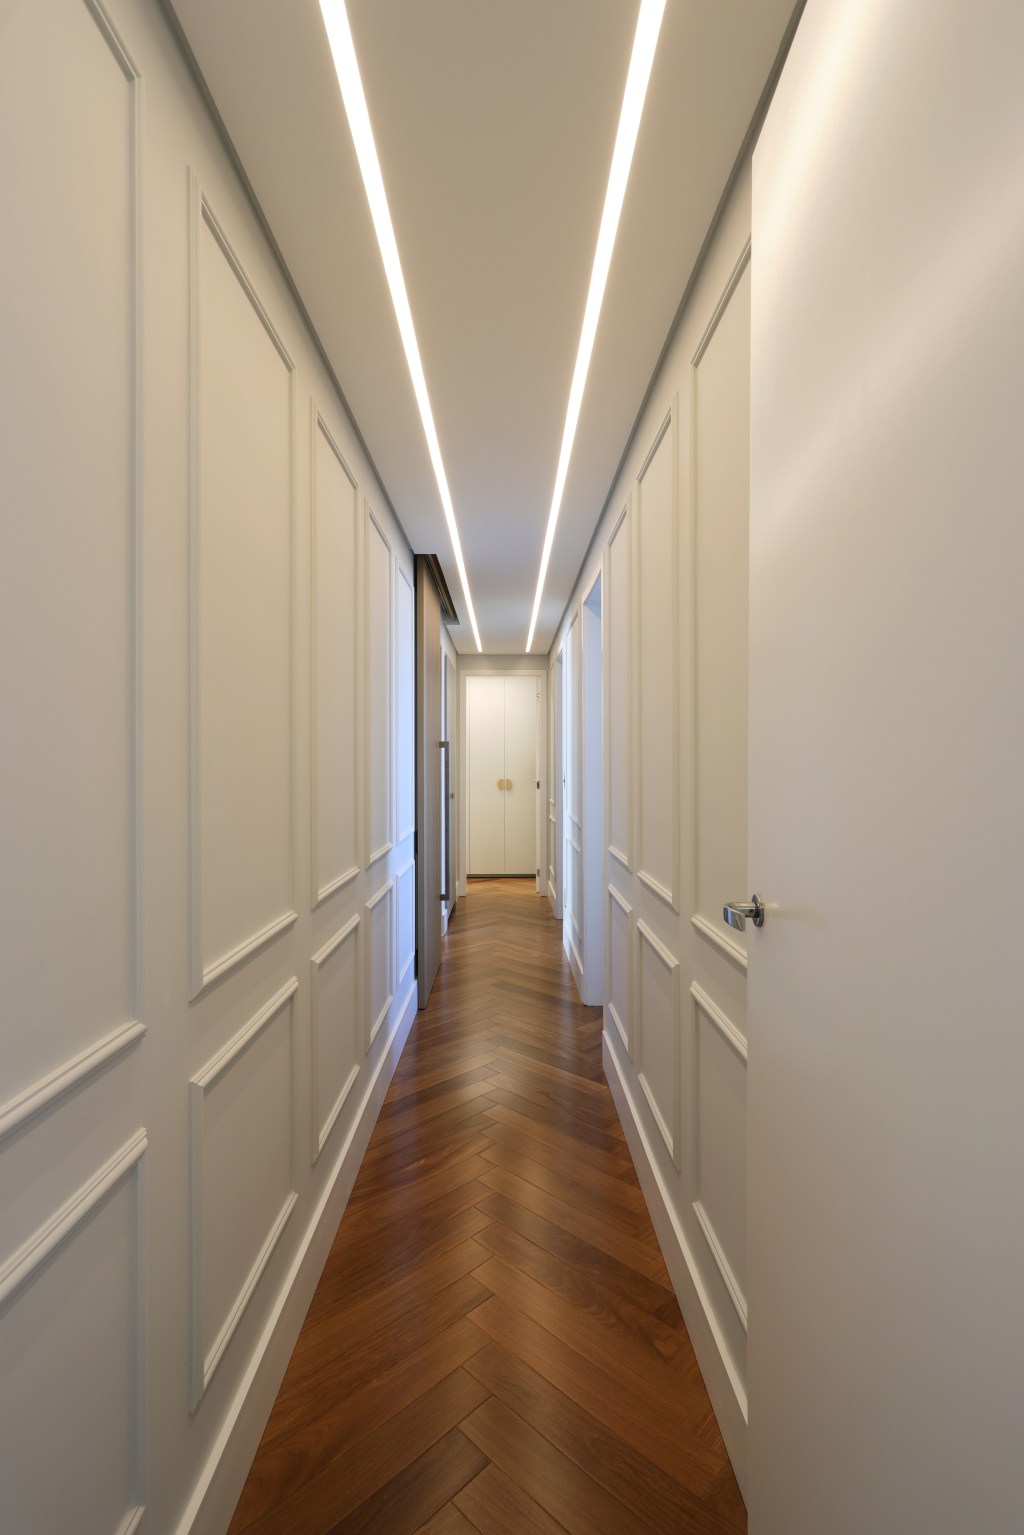 Apê moderno de 209 m² ganha toque francês com boiseries e molduras . Projeto de Barbara Dundes. Na foto, corredor com boiserie na parede.